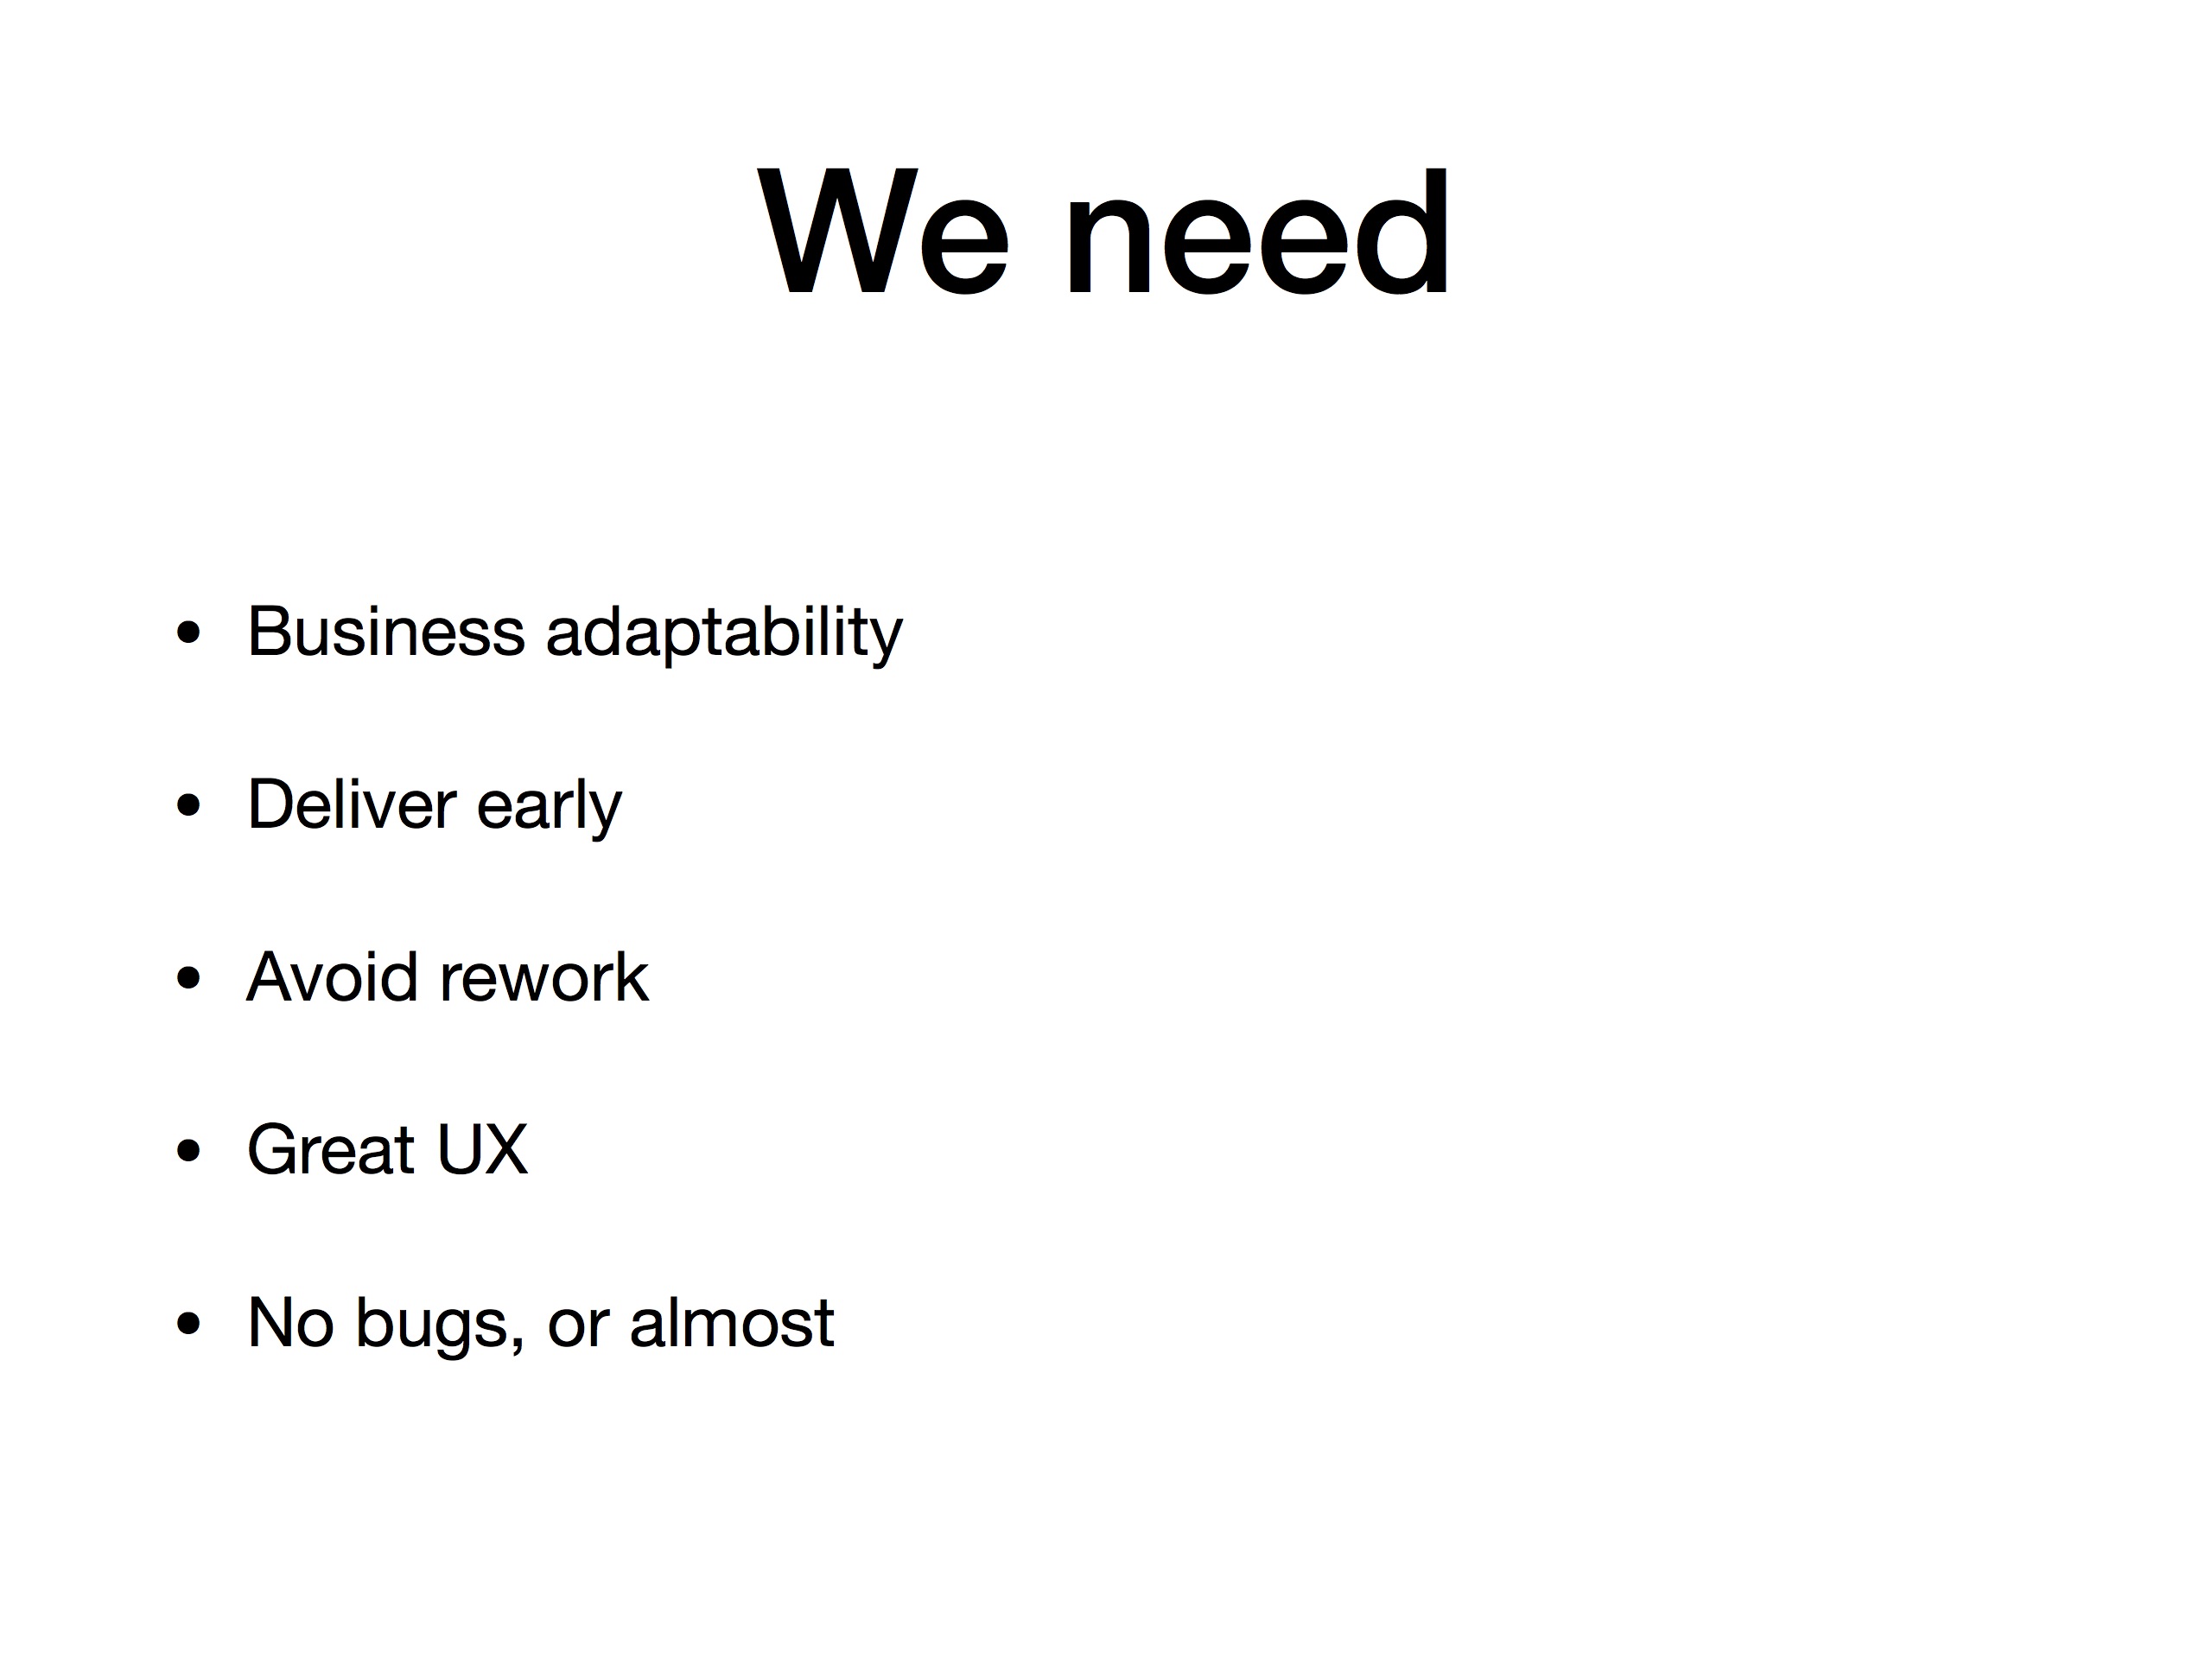 Diapositiva de una presentación con la visión de lo que, como equipo deberíamos cubrir: adaptabilidad respecto a negocio, entregar pronto, evitar retrabajo, una buena UX y evitar bugs en lo posible